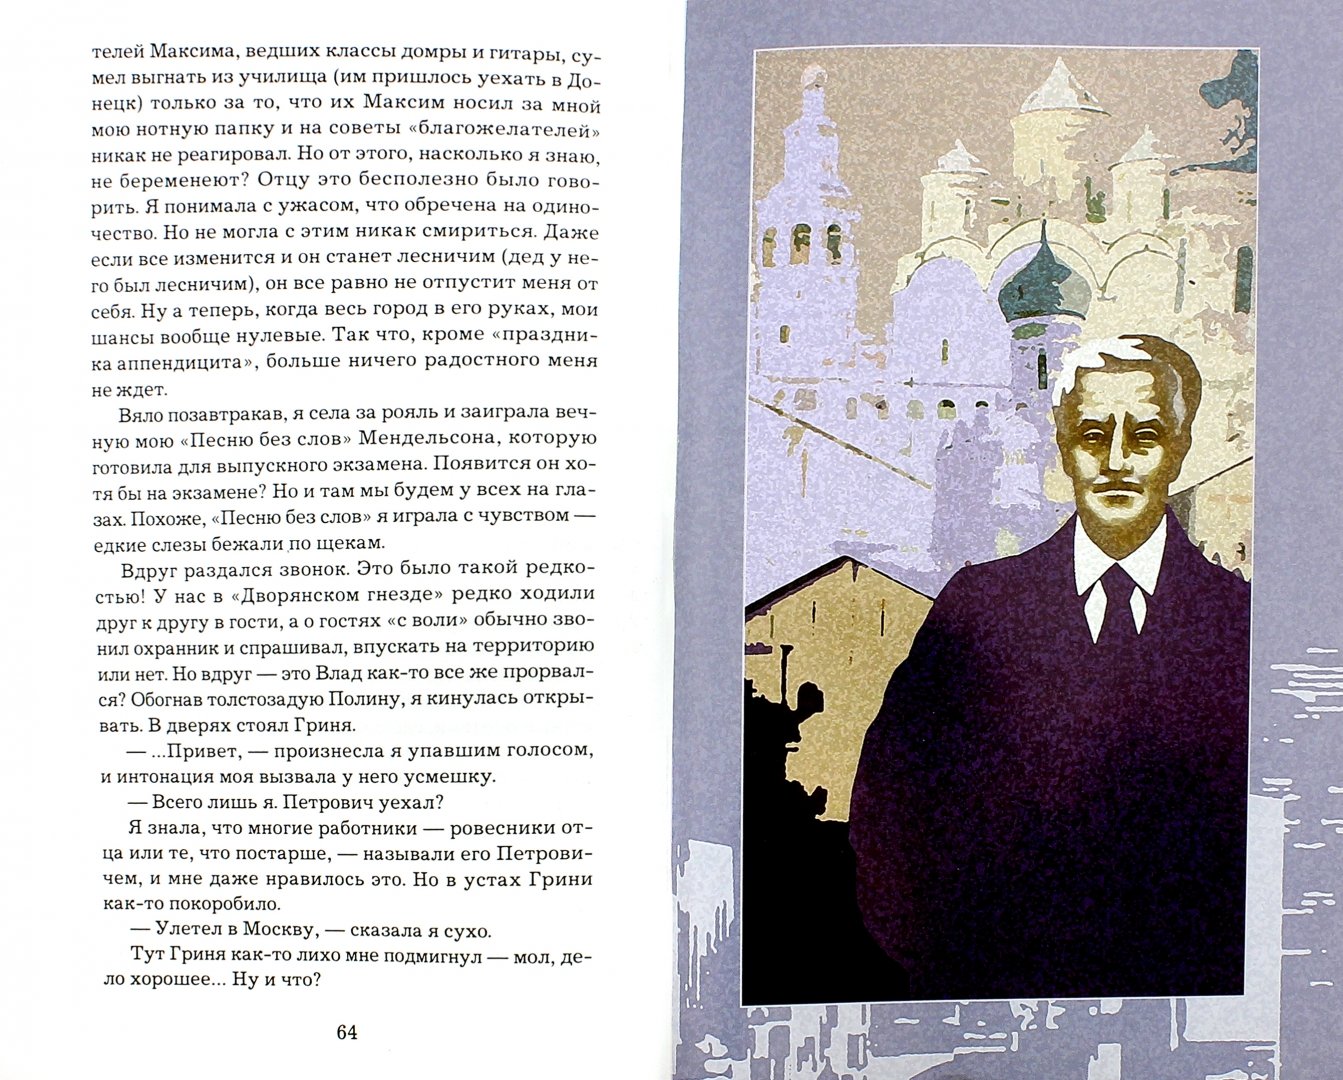 Иллюстрация 1 из 10 для Тетрада фалло - Попов, Шмуклер | Лабиринт - книги. Источник: Лабиринт